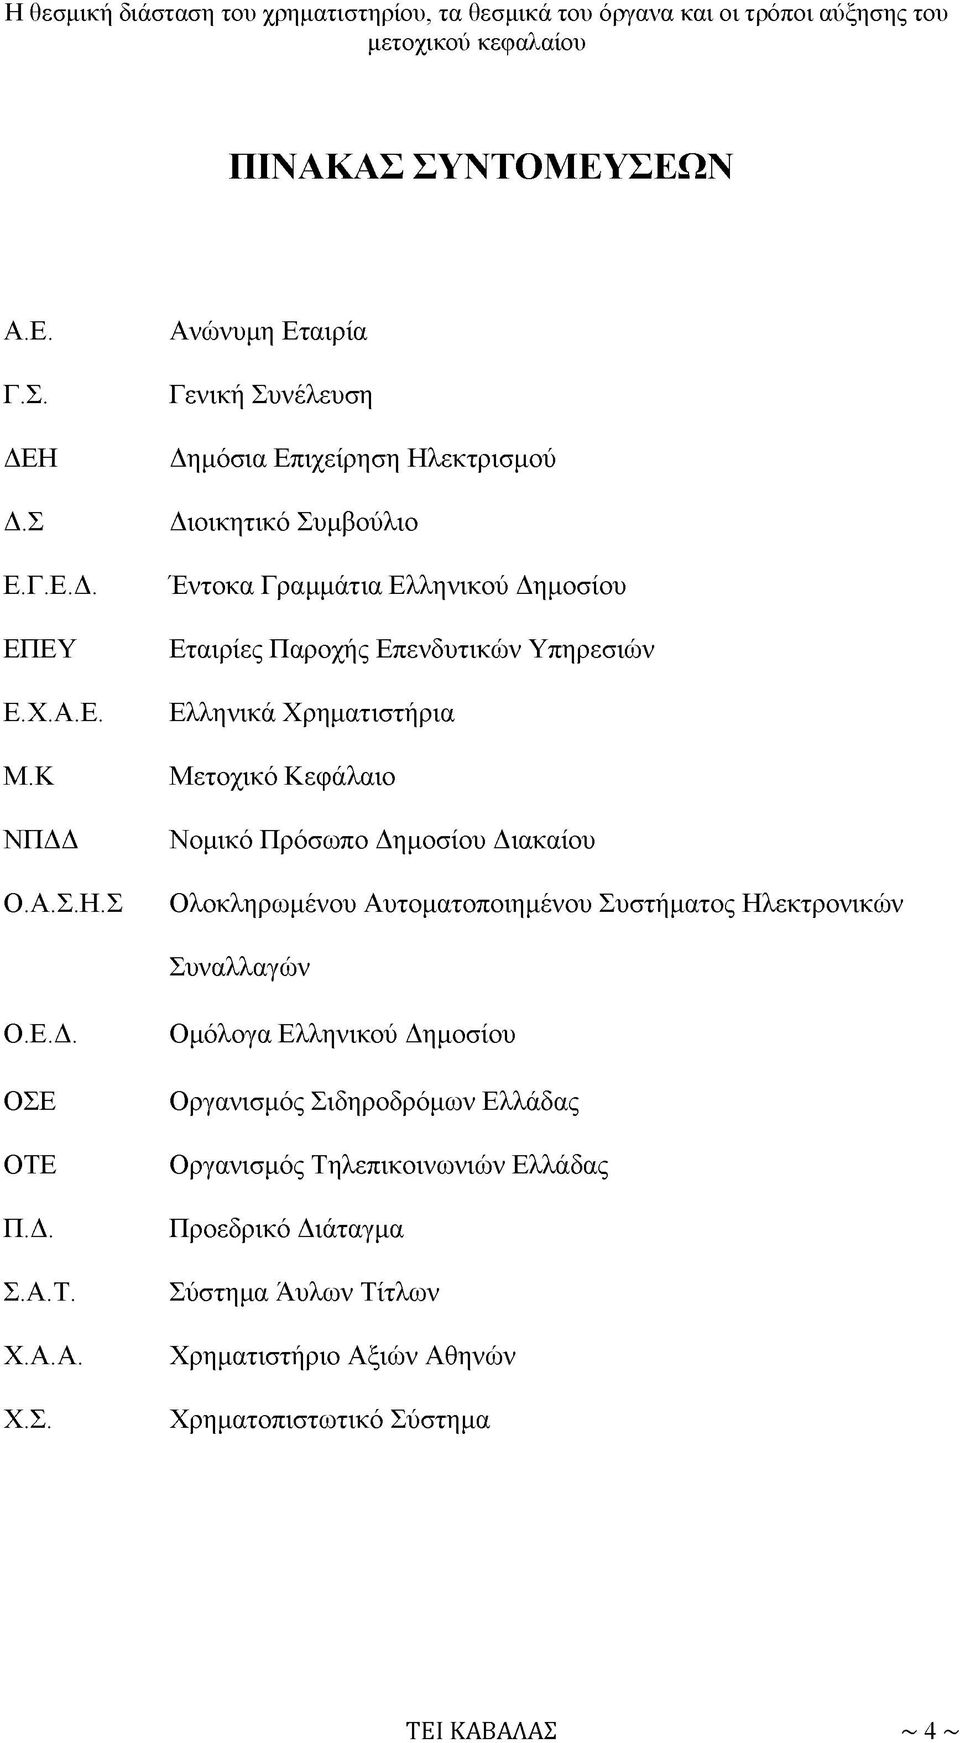 Σ Ανώνυμη Εταιρία Γενική Συνέλευση Δημόσια Επιχείρηση Ηλεκτρισμού Διοικητικό Συμβούλιο Έντοκα Γραμμάτια Ελληνικού Δημοσίου Εταιρίες Παροχής Επενδυτικών